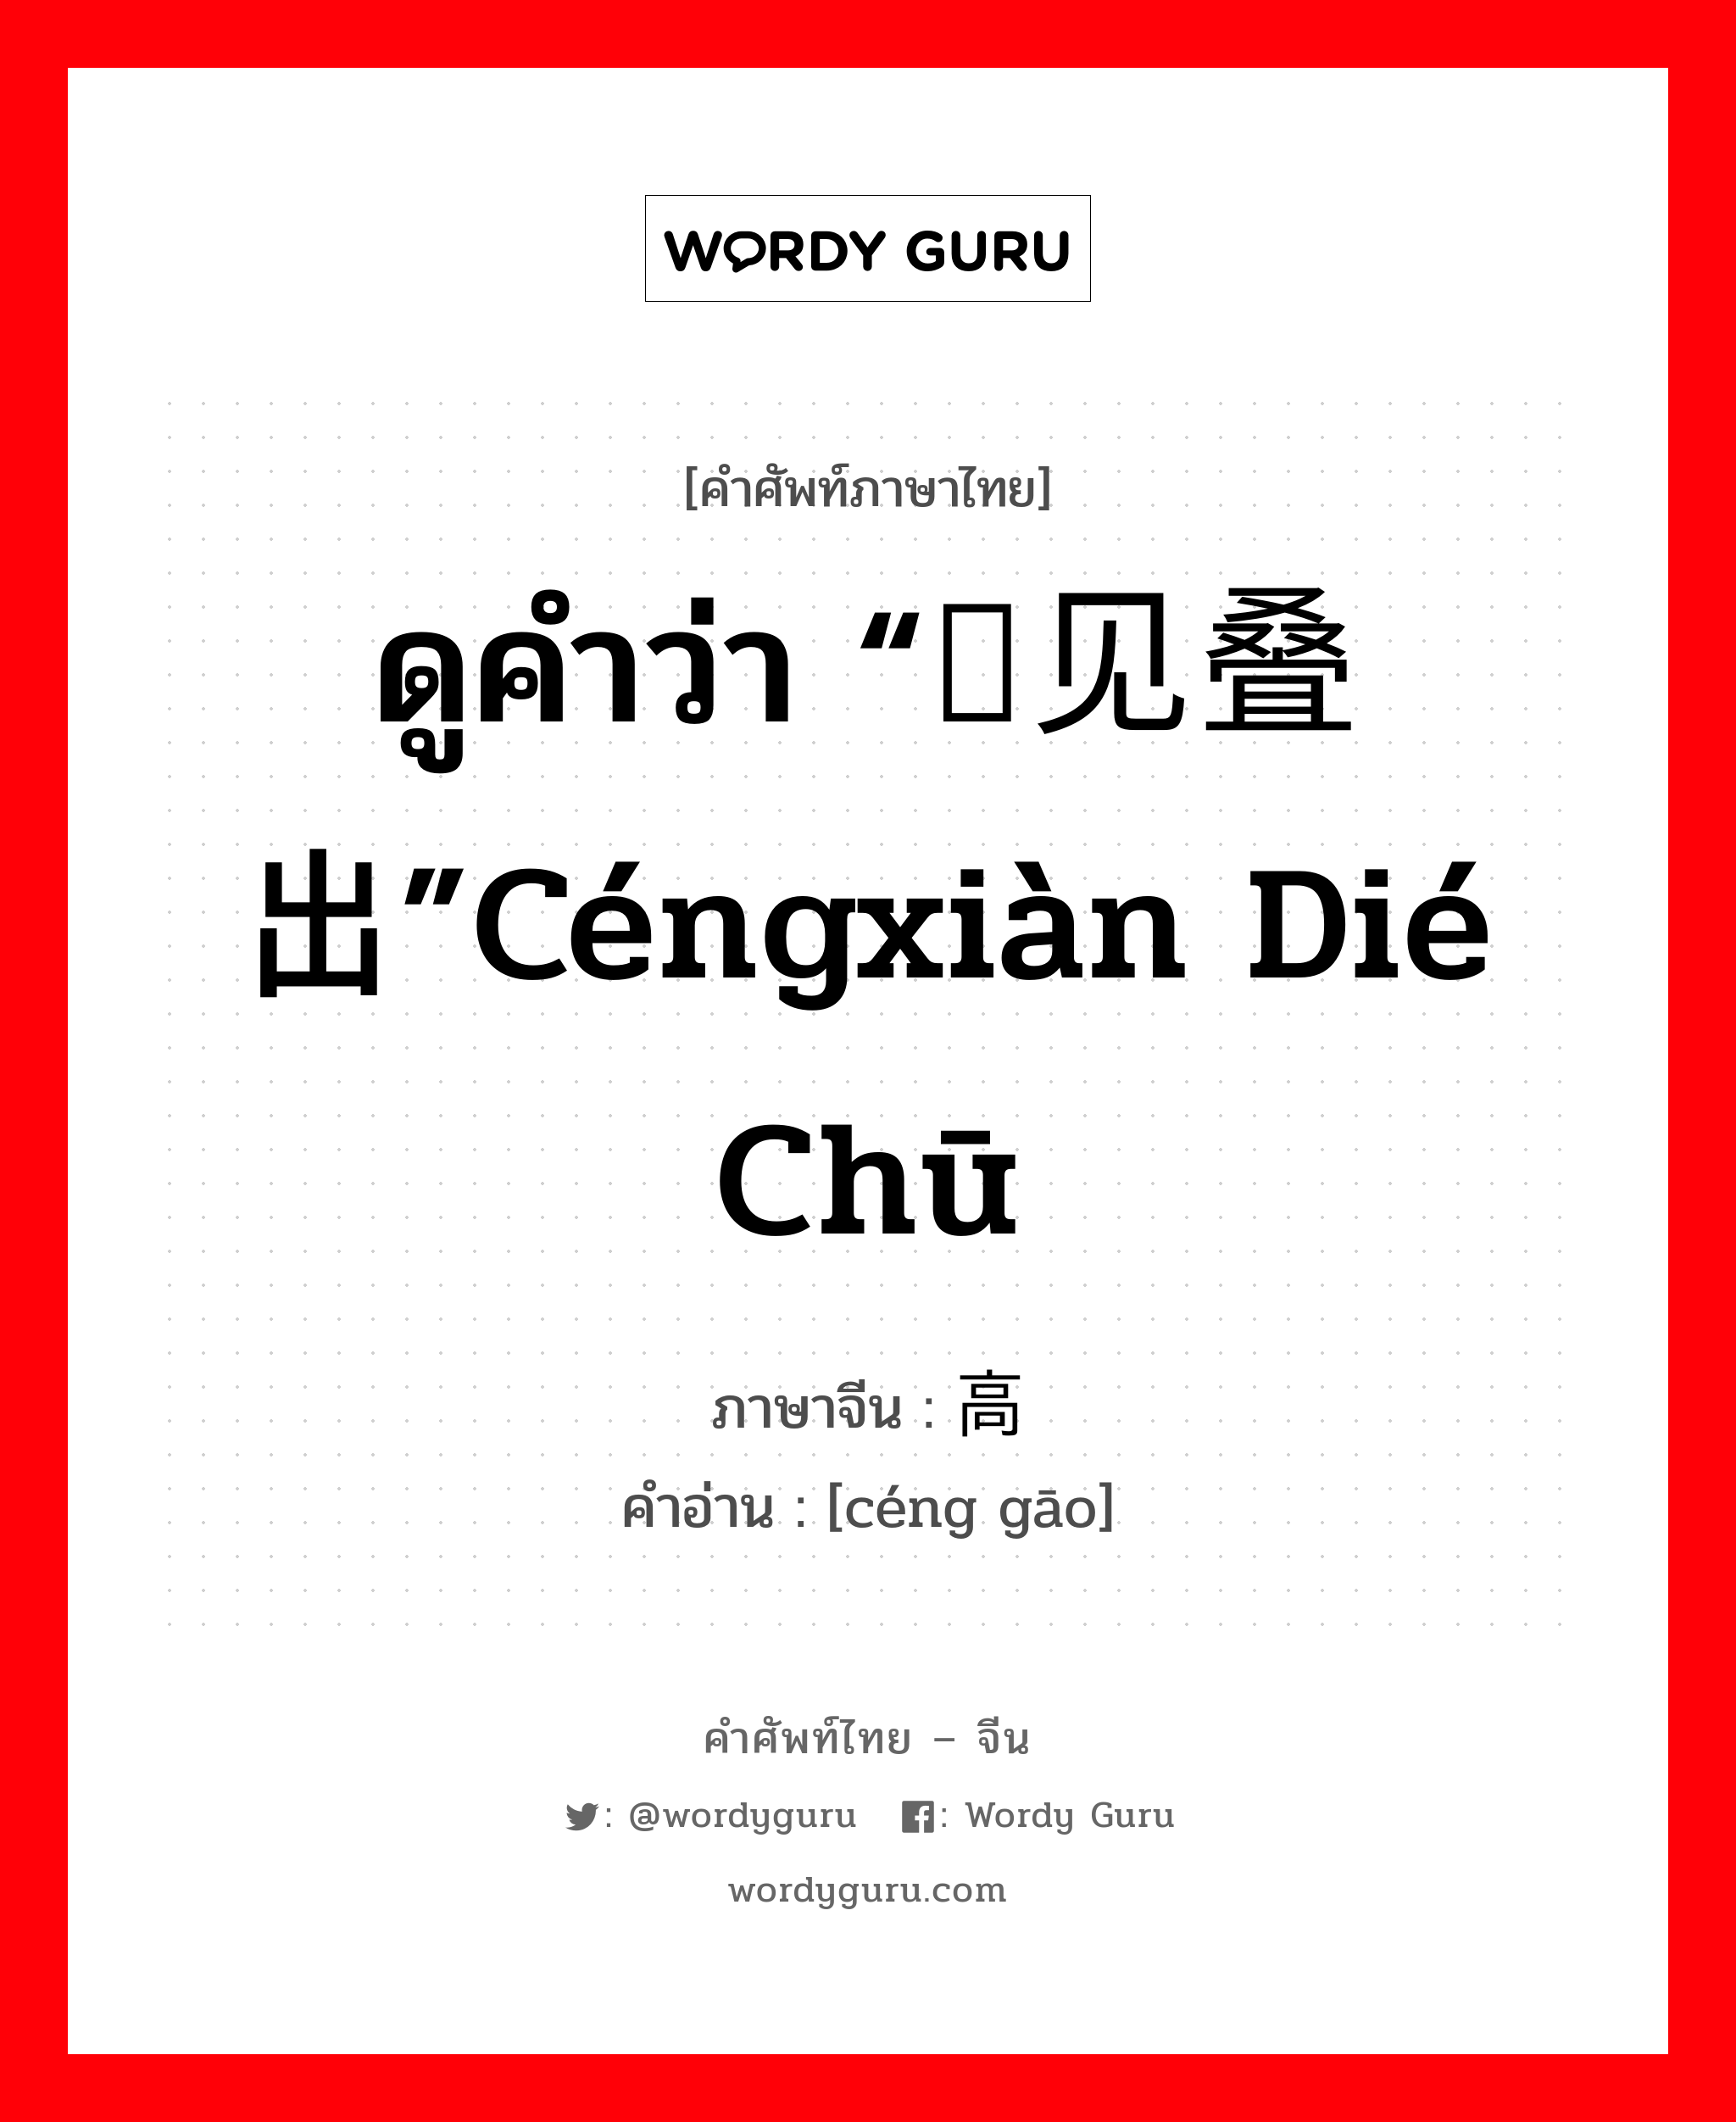 ดูคำว่า “层见叠出”céngxiàn dié chū ภาษาจีนคืออะไร, คำศัพท์ภาษาไทย - จีน ดูคำว่า “层见叠出”céngxiàn dié chū ภาษาจีน 层高 คำอ่าน [céng gāo]